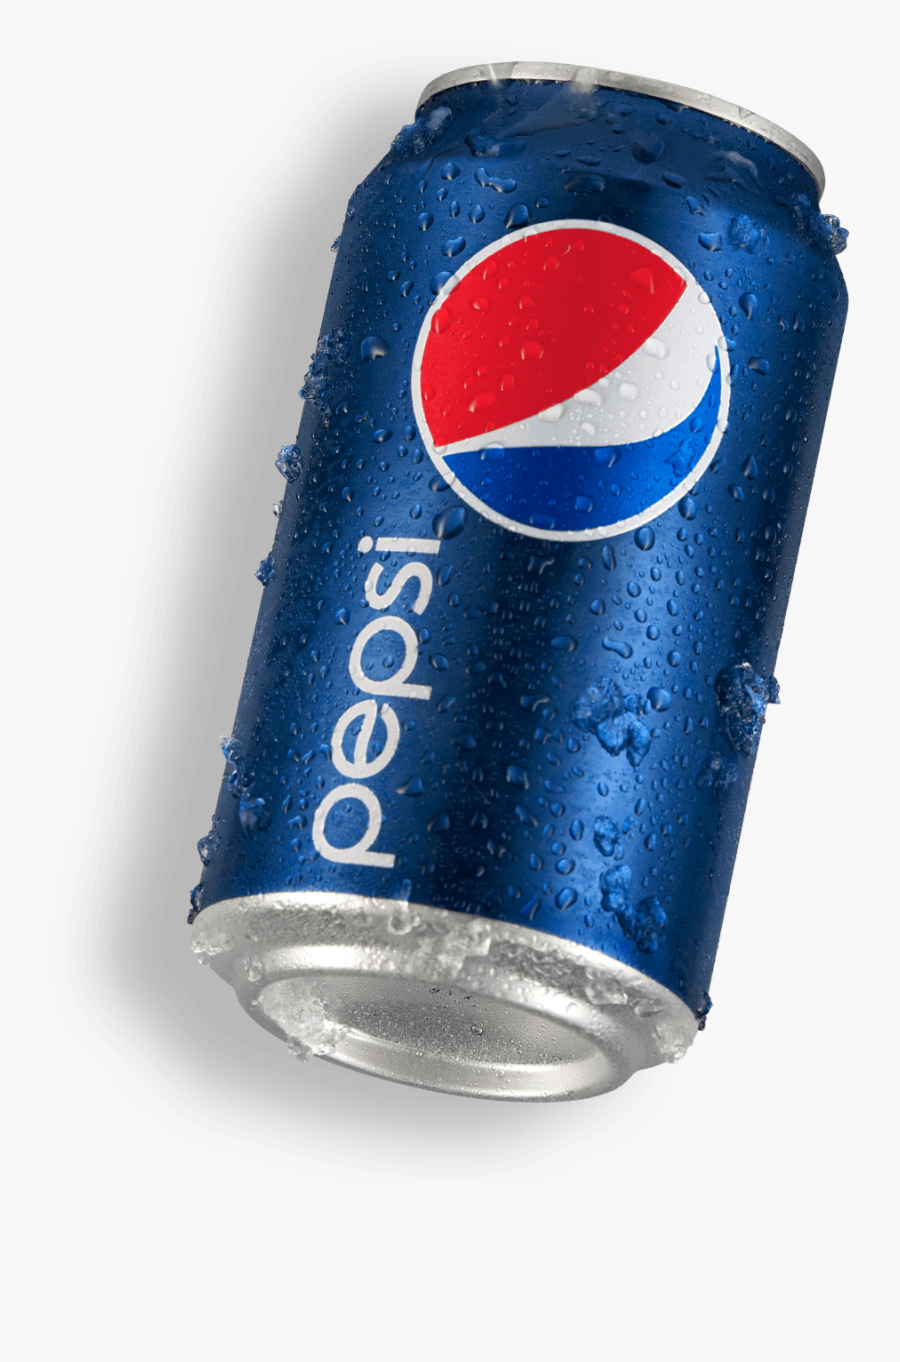 New Pepsi Can - Pepsi, Transparent Clipart